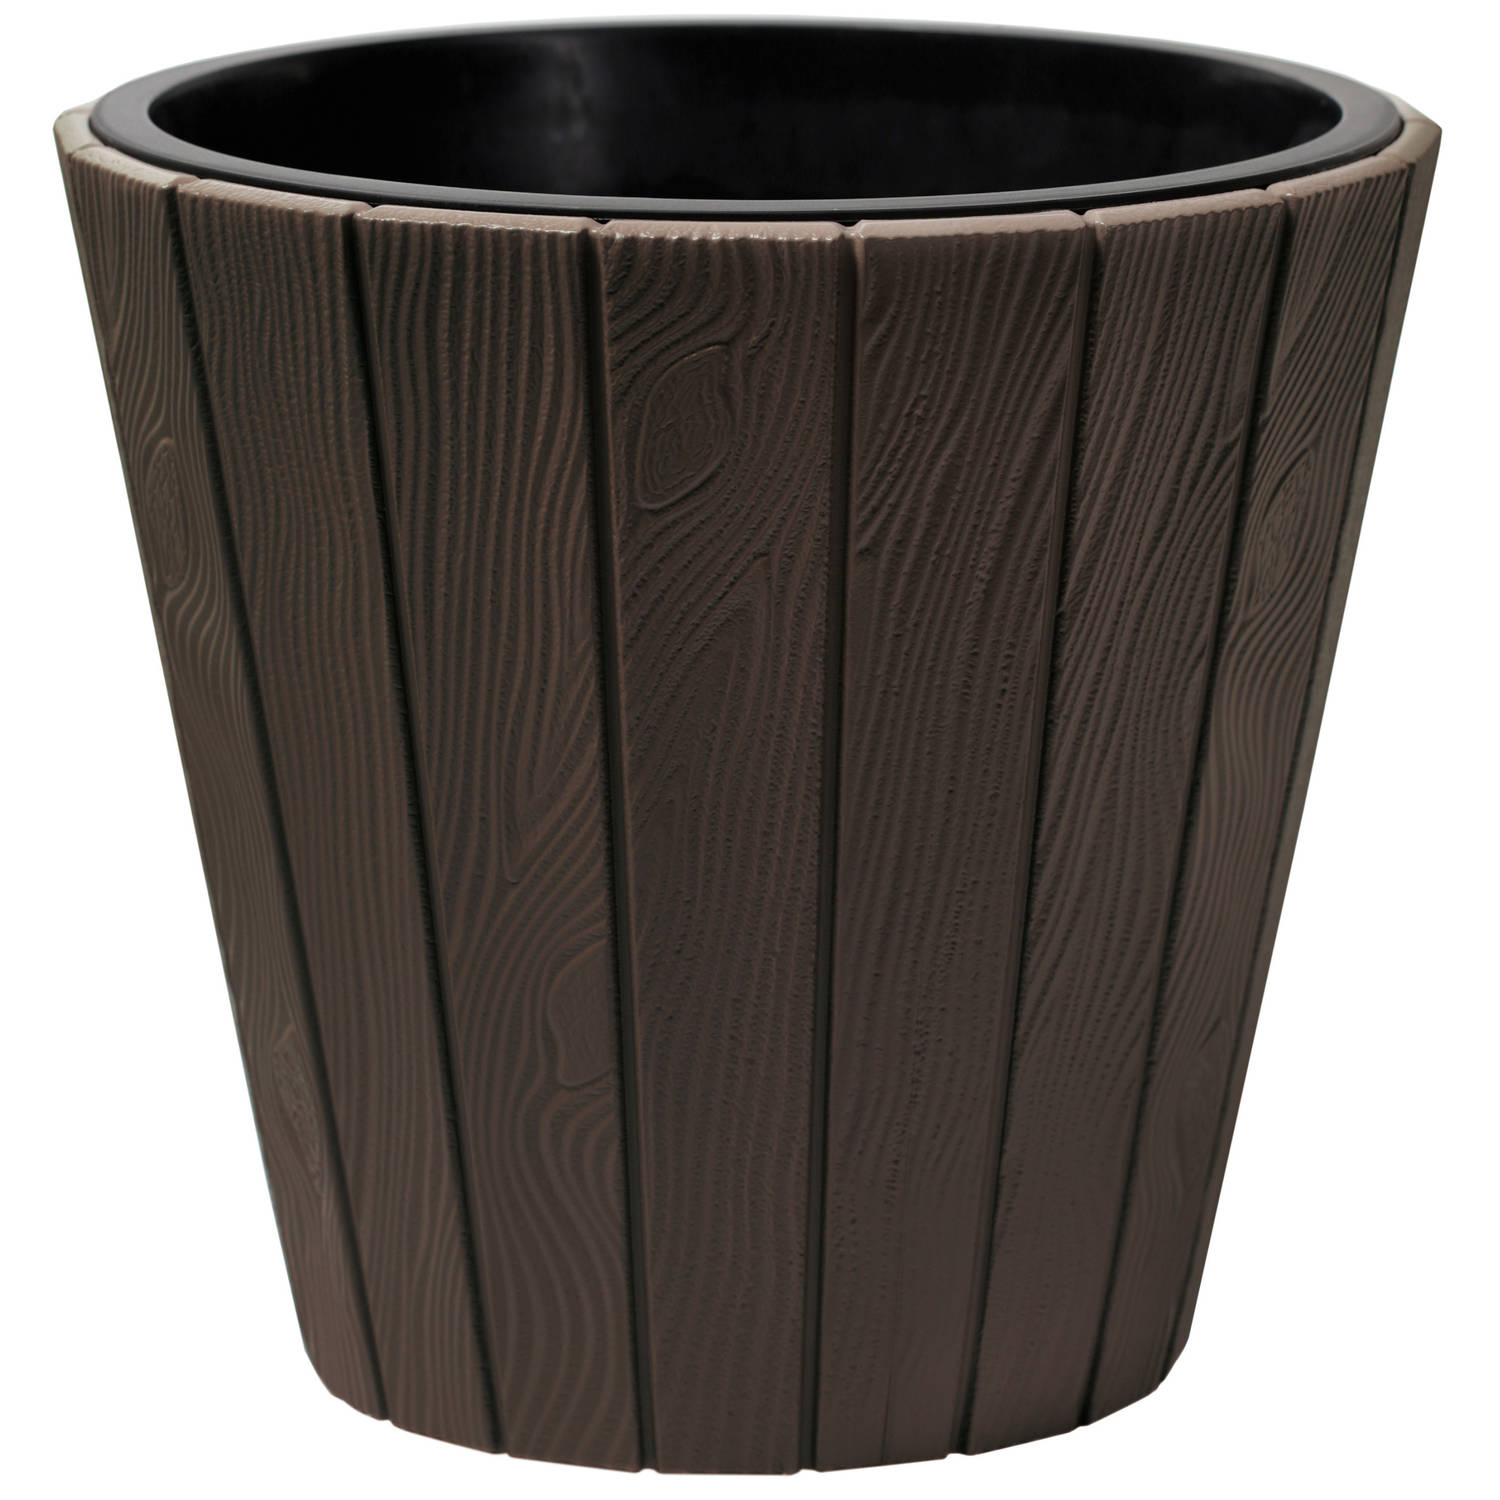 Prosperplast Plantenpot/bloempot Wood Style - buiten/binnen - kunststof - donkerbruin - D30 x H28 cm - met binnenpot